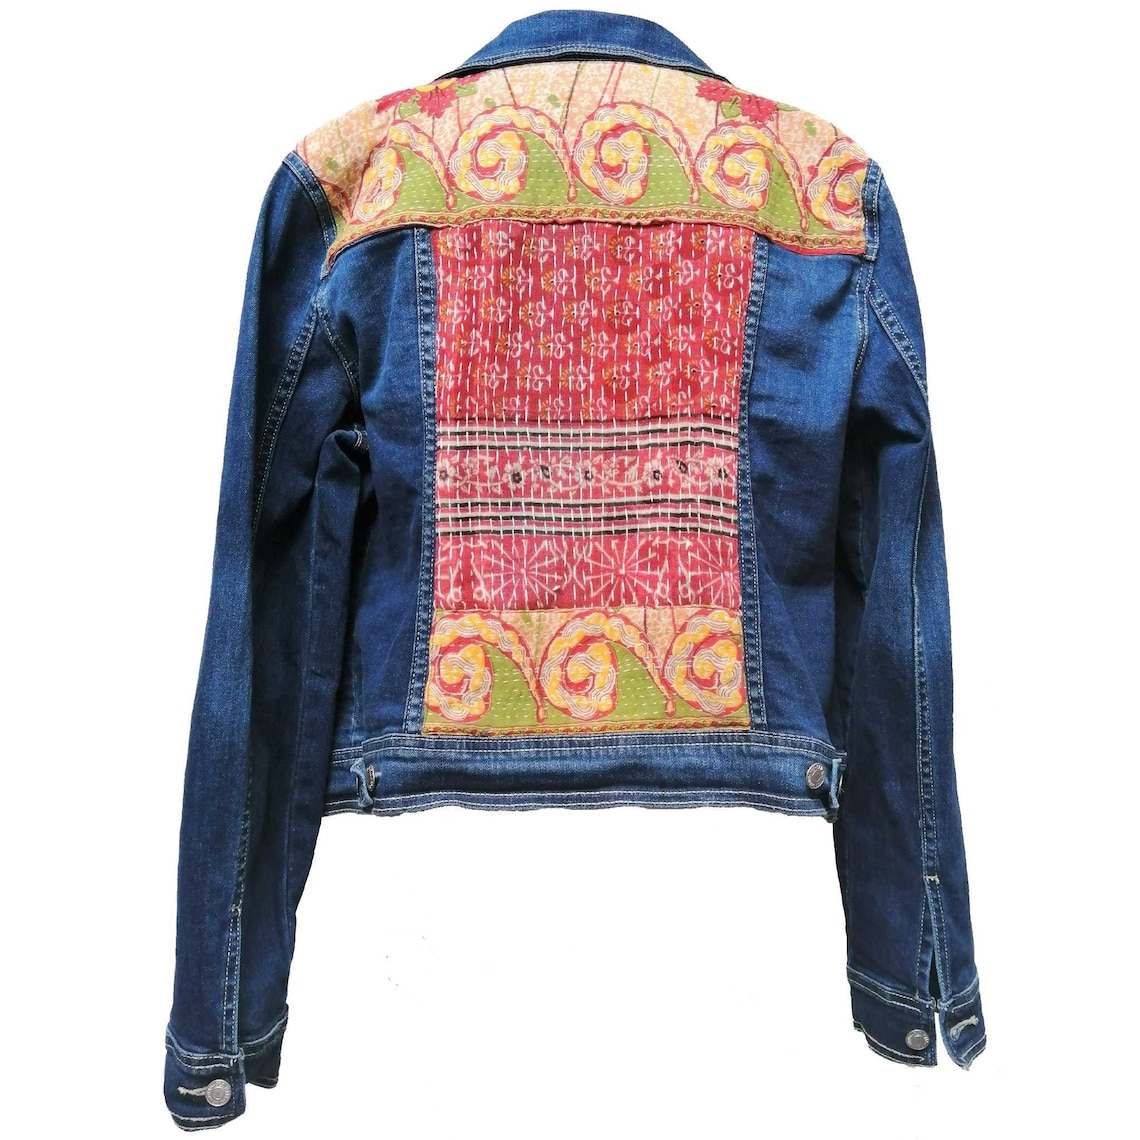 Denim Jacket With Indian Stitched Kantha Patterned Fabric - Etsy UK